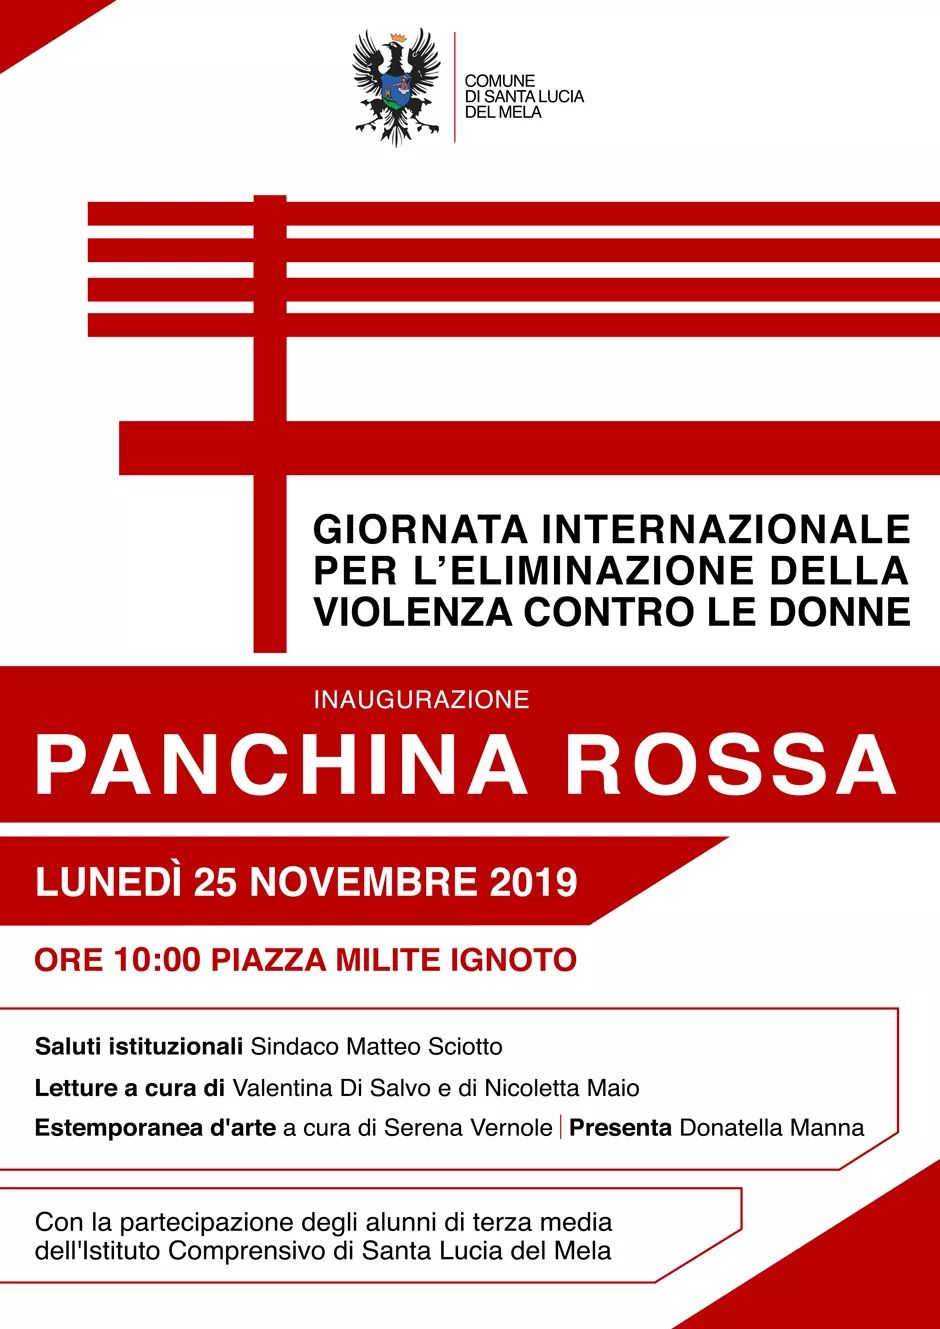 S.Lucia del Mela. ‘Panchina rossa’ per dire no alla violenza sulle donne